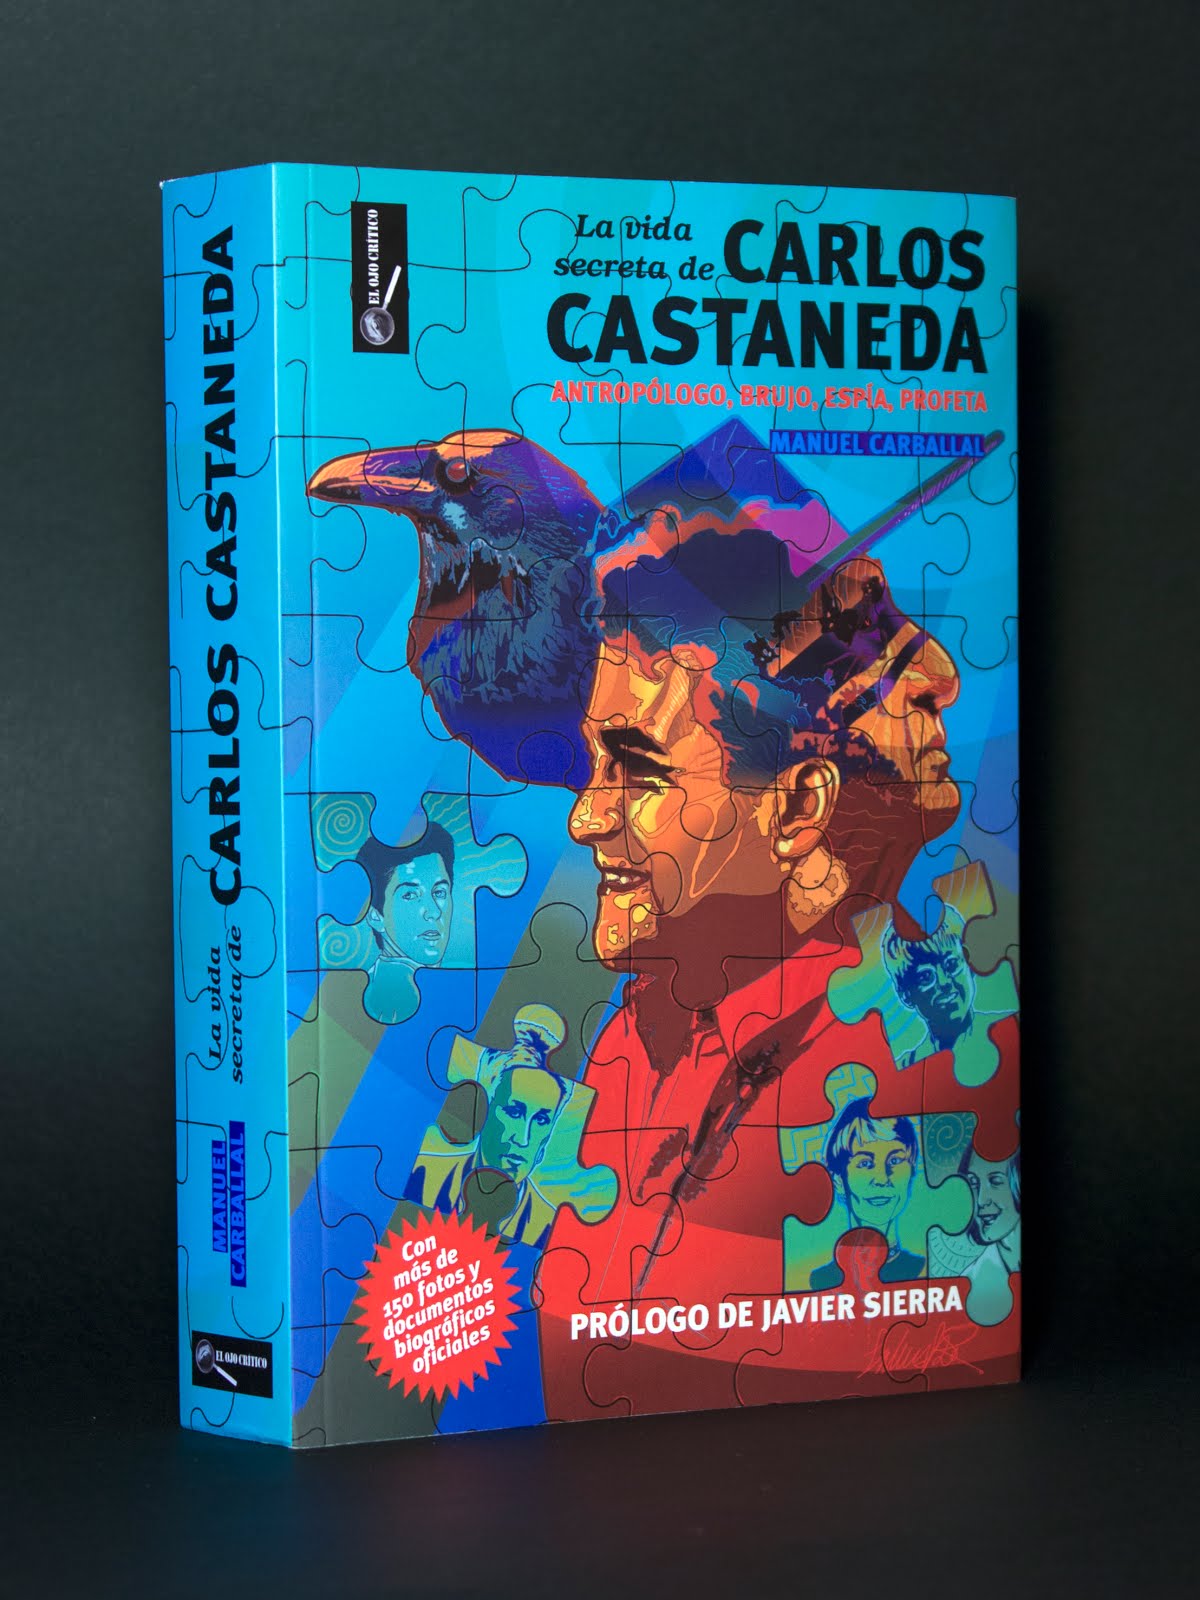 "LA VIDA SECRETA DE CARLOS CASTANEDA: Antropólogo, brujo, espía, profeta"